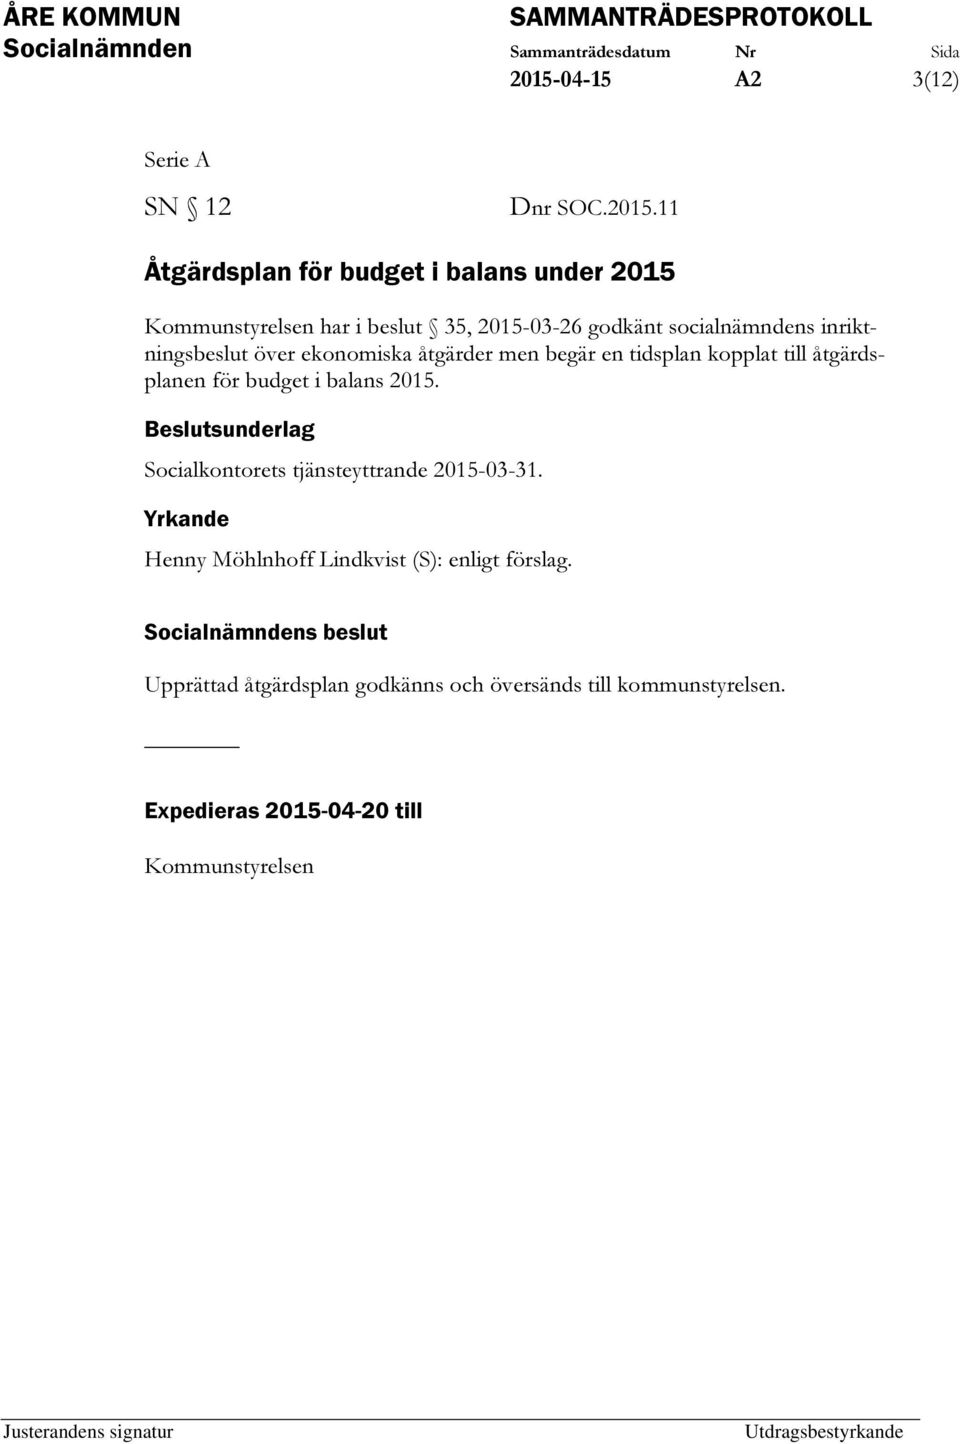 åtgärdsplanen för budget i balans 2015. Beslutsunderlag Socialkontorets tjänsteyttrande 2015-03-31.